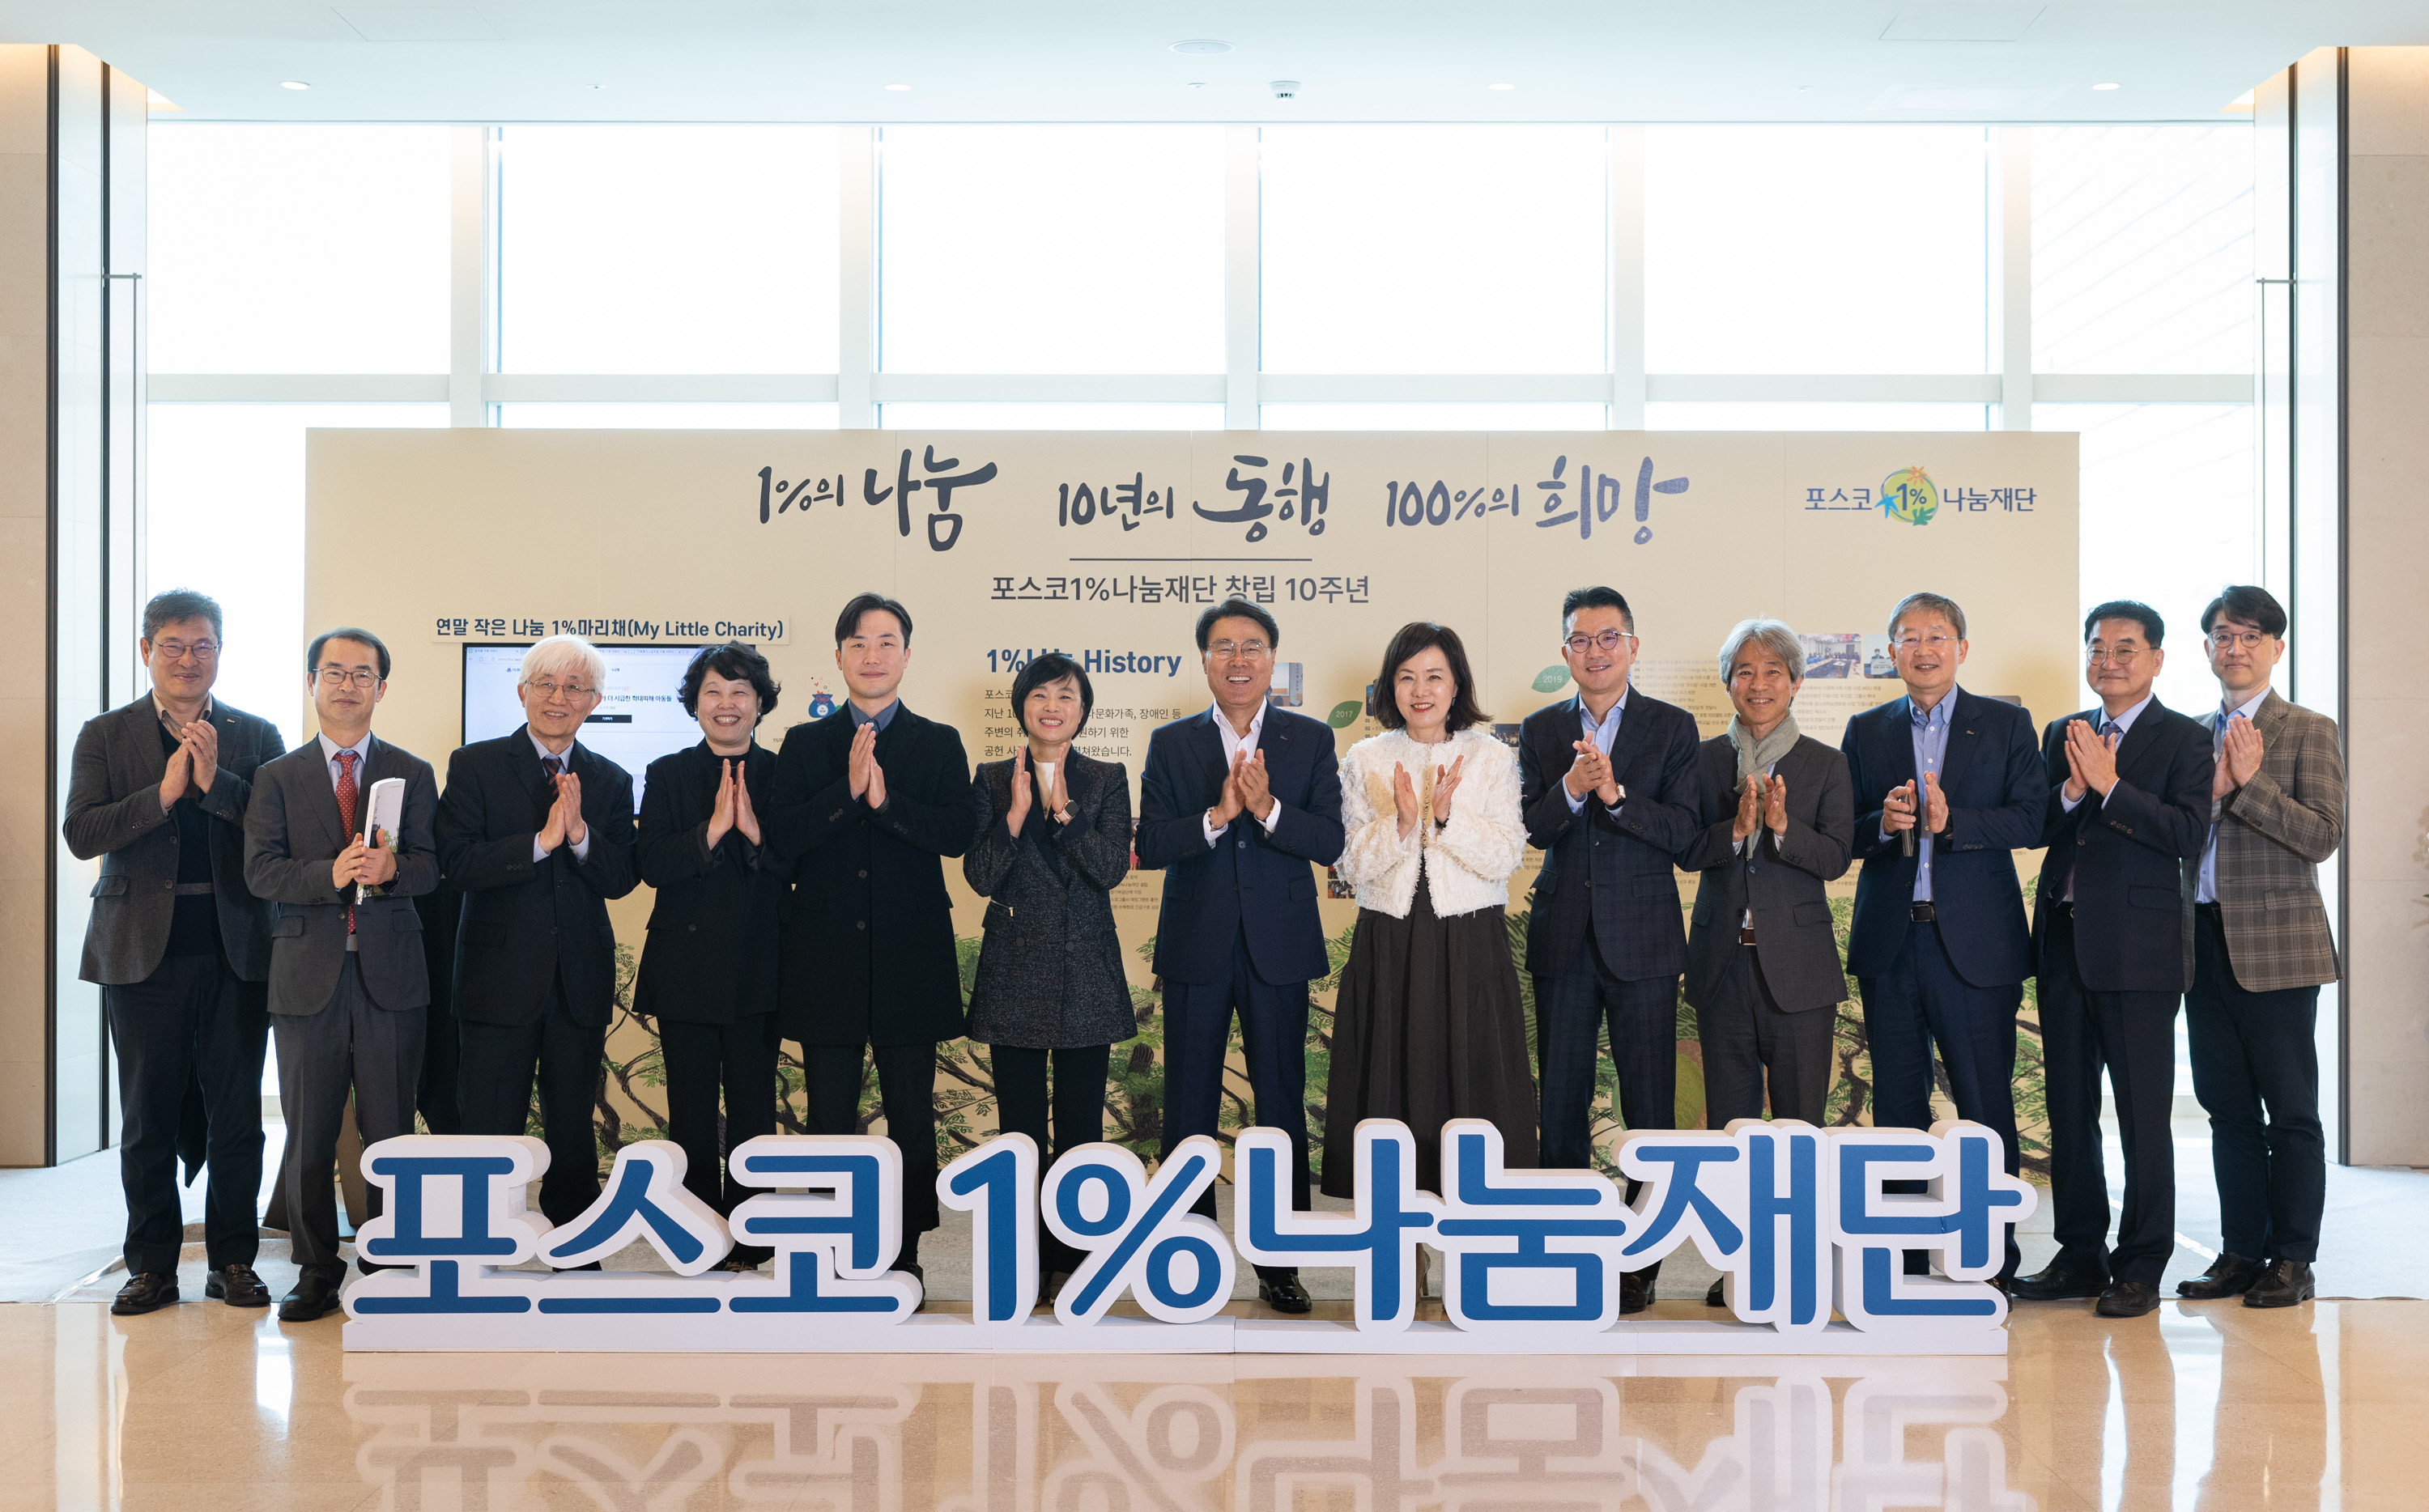 지난달 8일 서울 포스코센터에서 열린 포스코1%나눔재단 창립 10주년 기념식에서 최정우(가운데) 포스코그룹 회장과 관계자들이 기념촬영을 하고 있다. 포스코그룹 제공